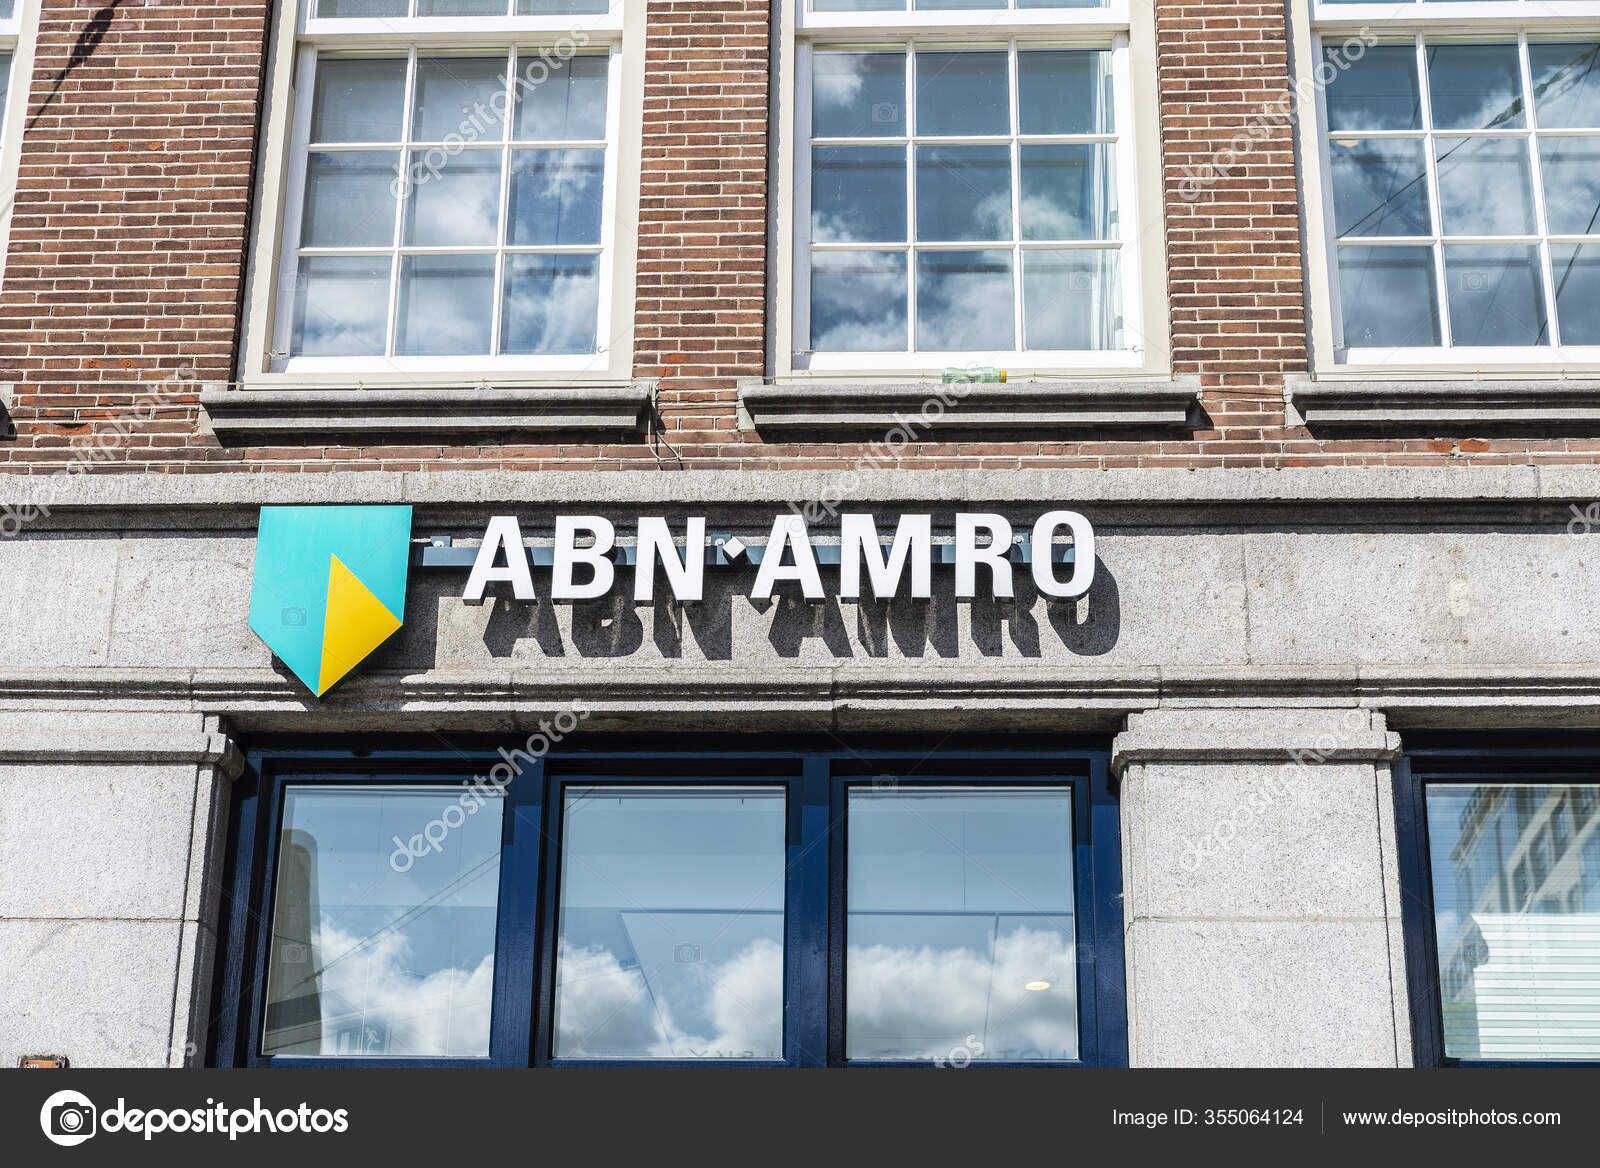 ABN AMRO lanceert support platform MKB